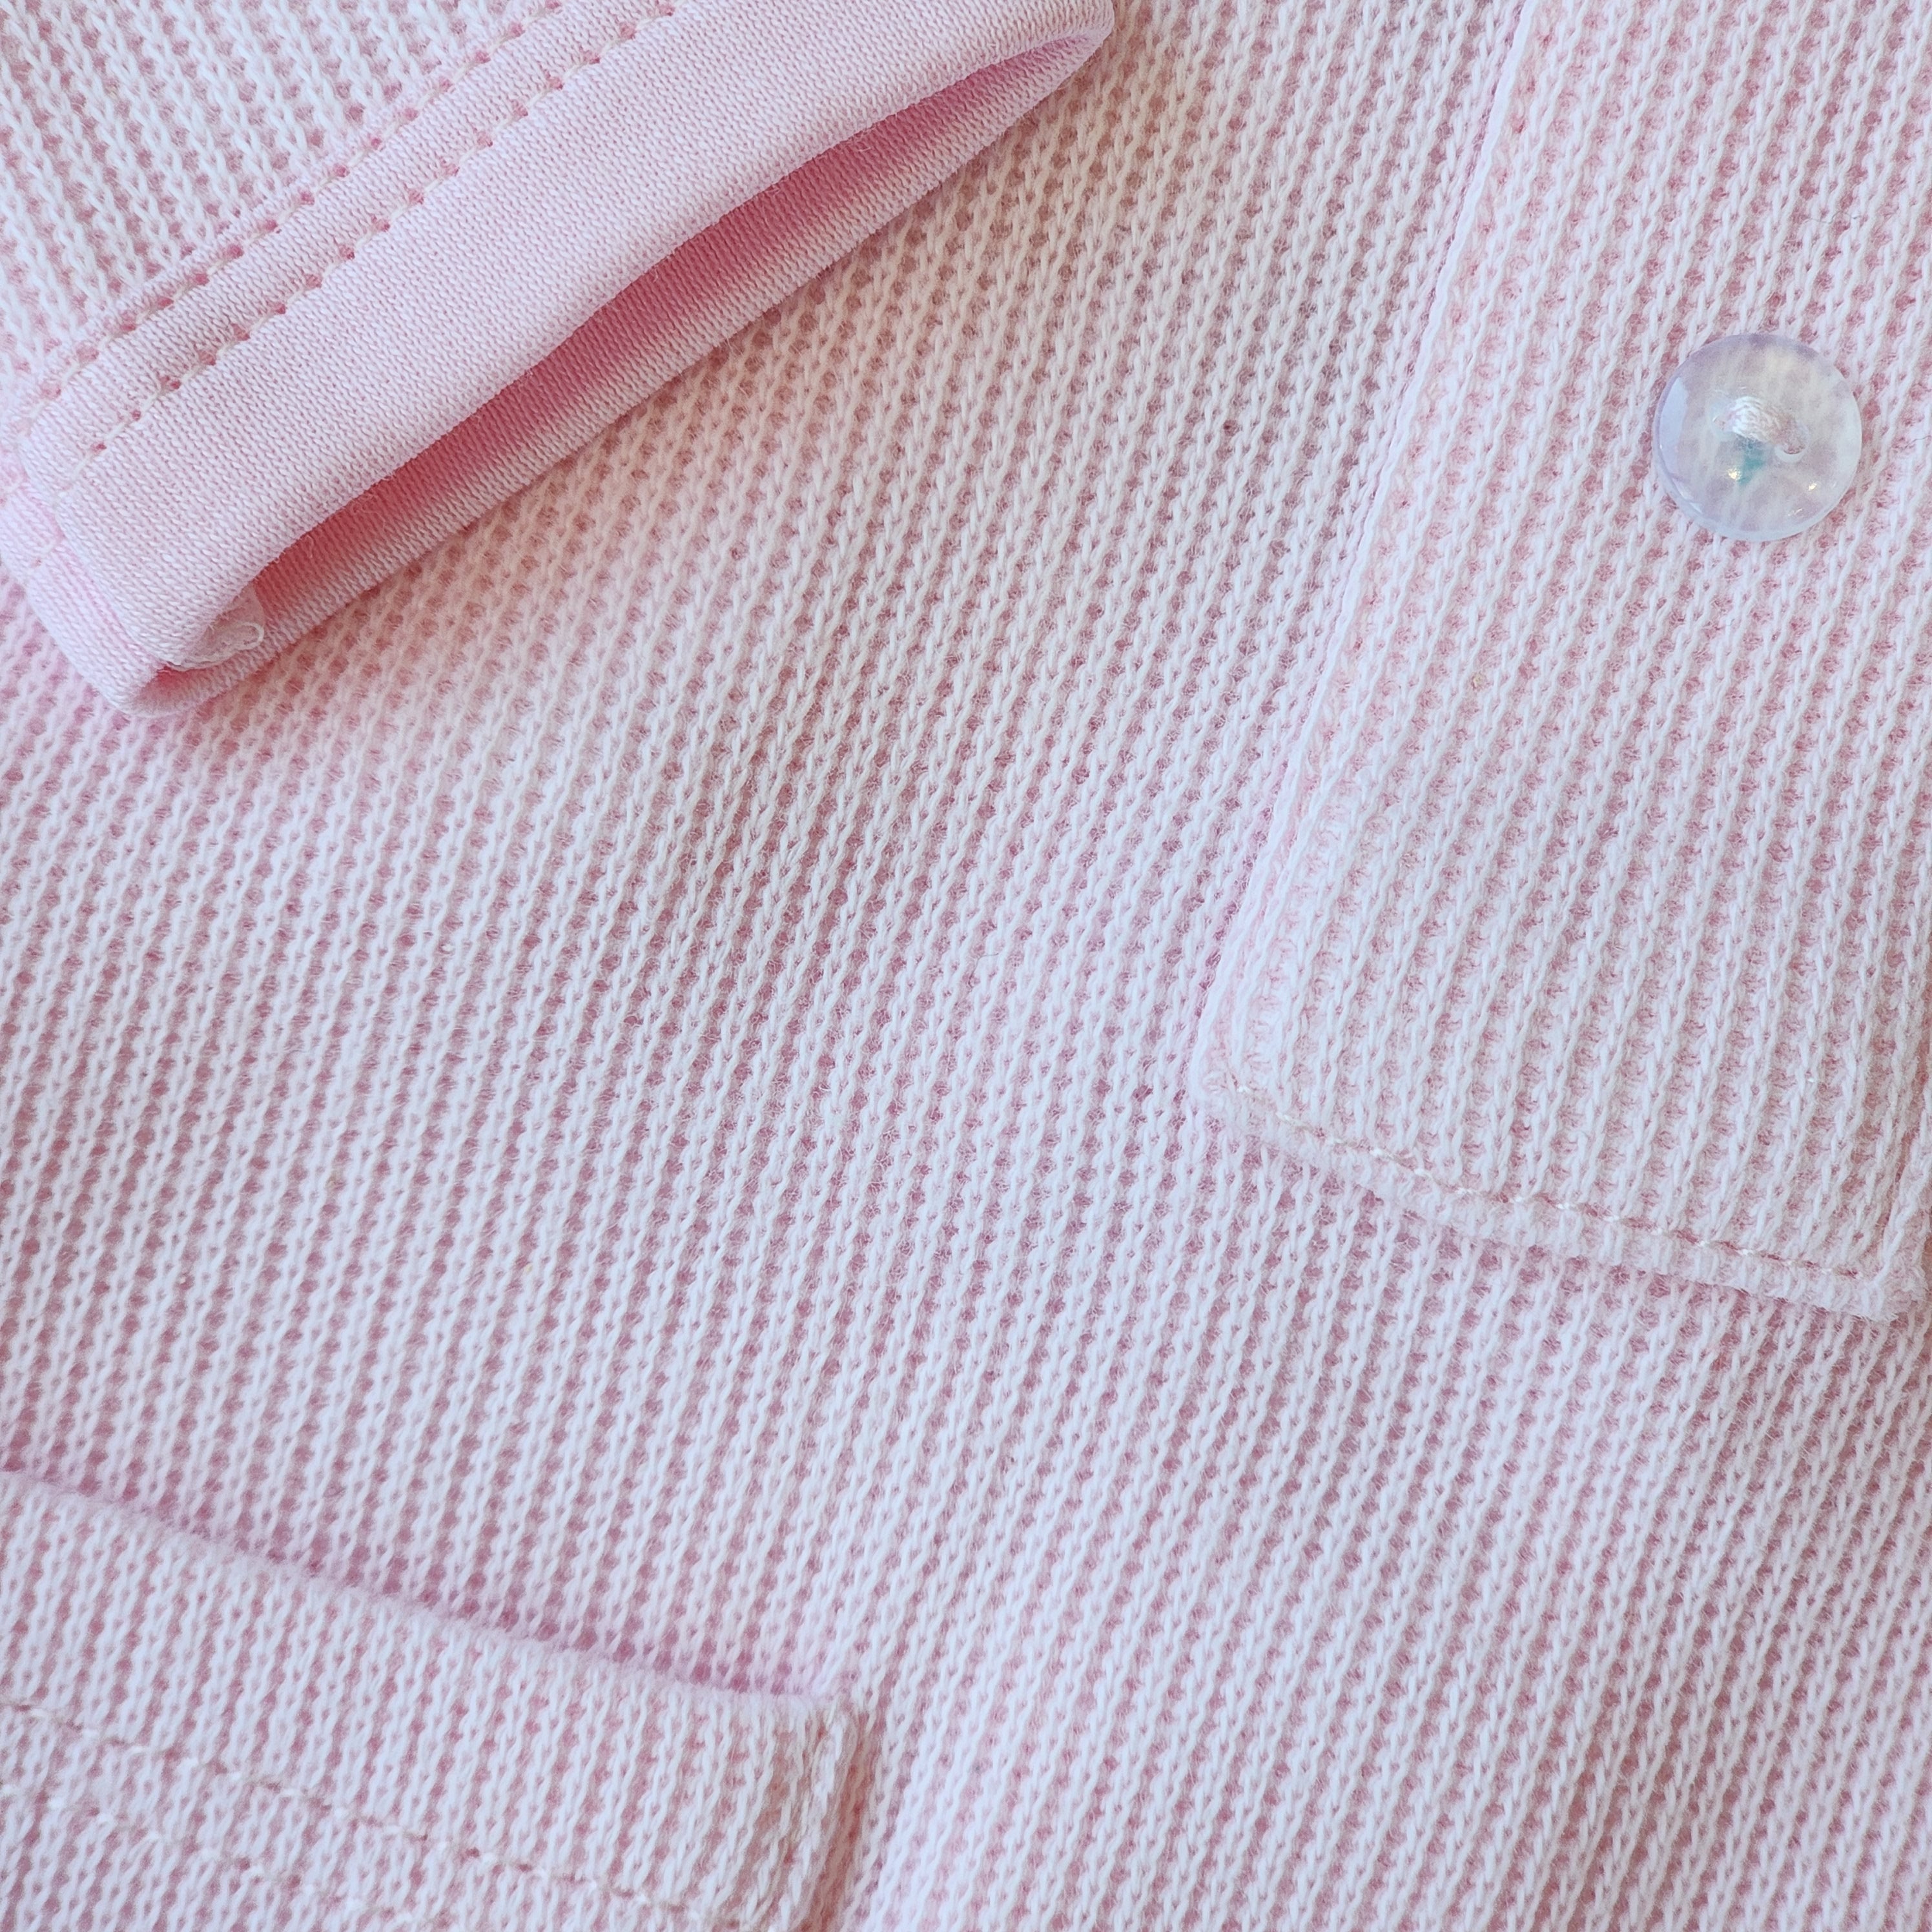 Cotton Pompom Pink Knit Pocket Footie Set